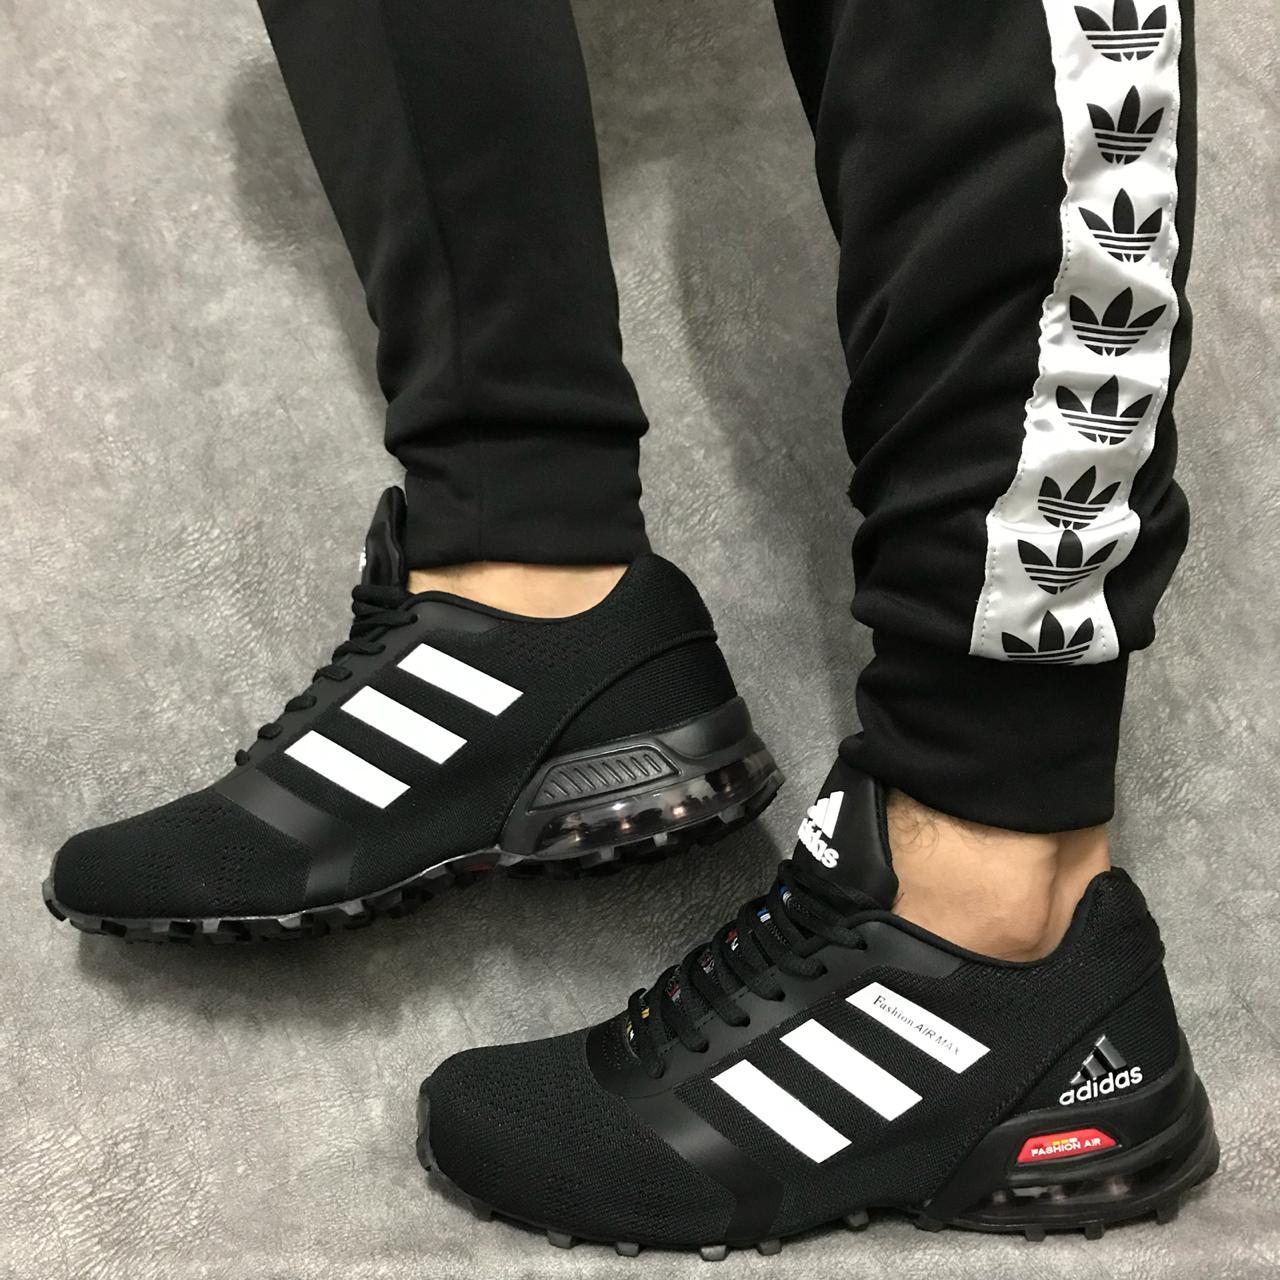 Adidas Cosmic 2018 Caballero - Zapatillas en